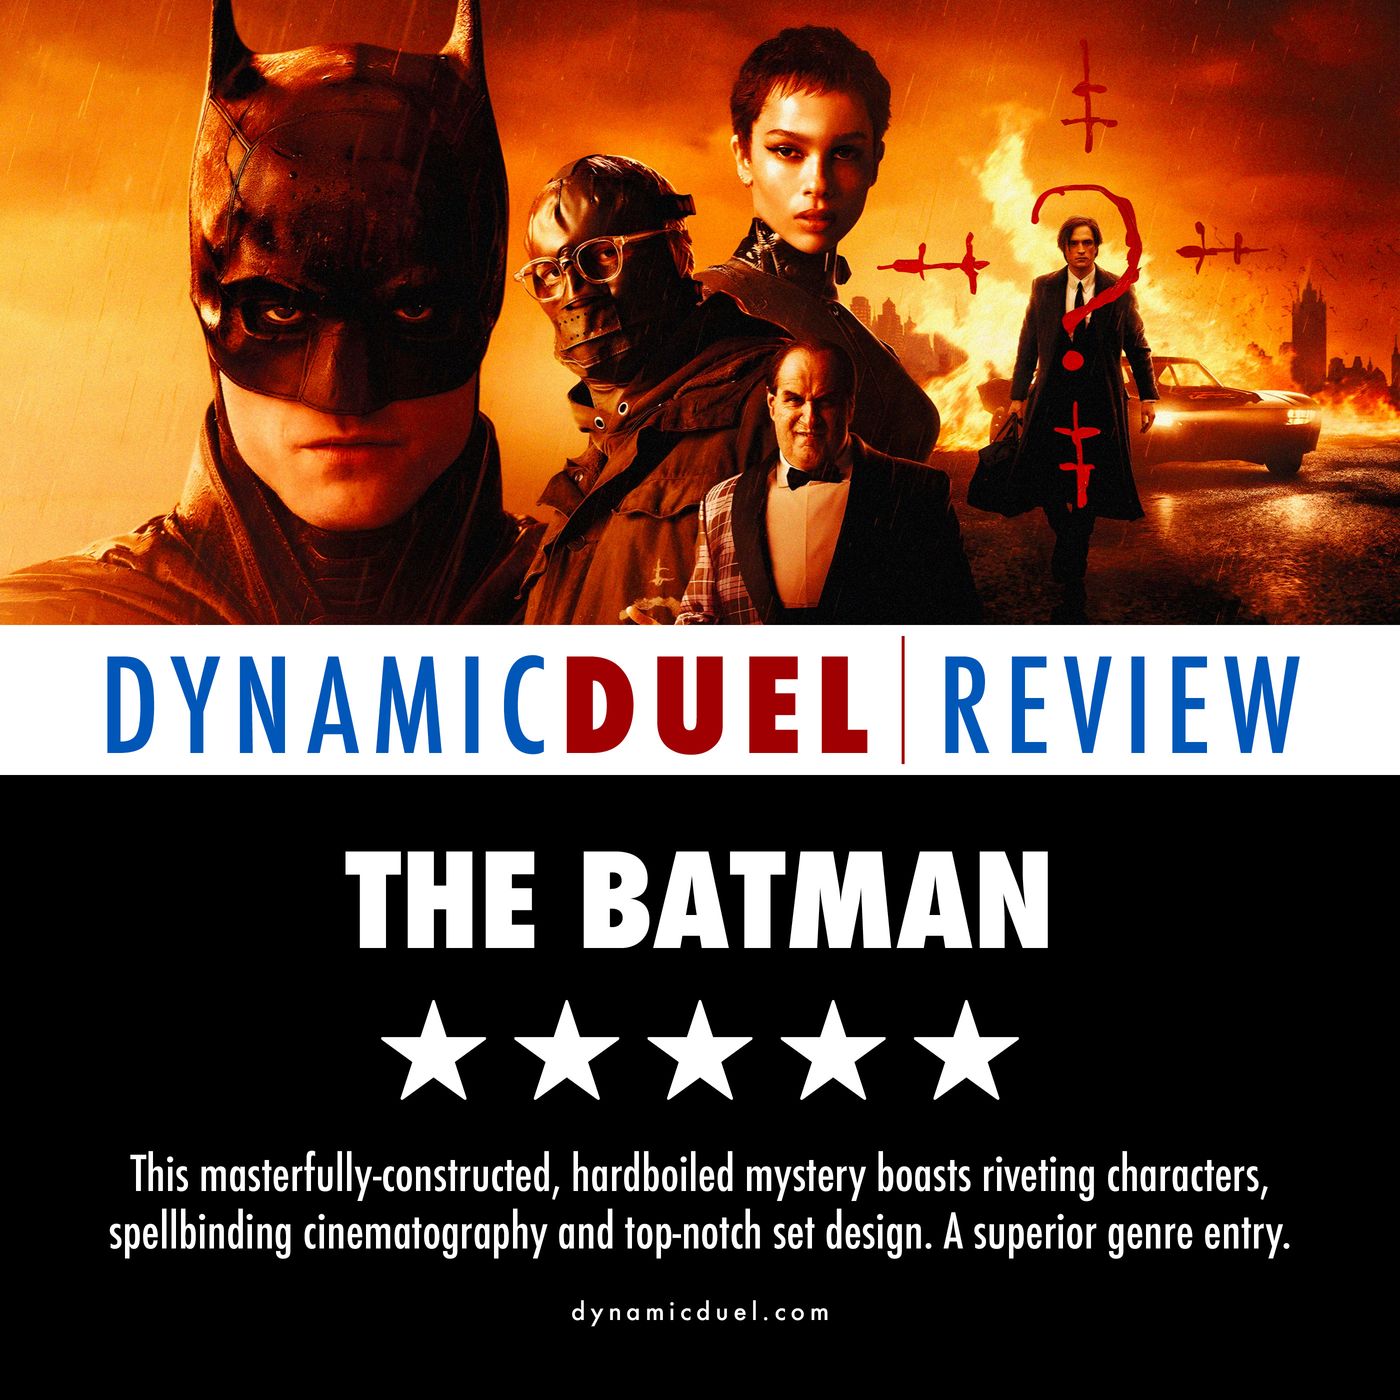 The Batman Review Image